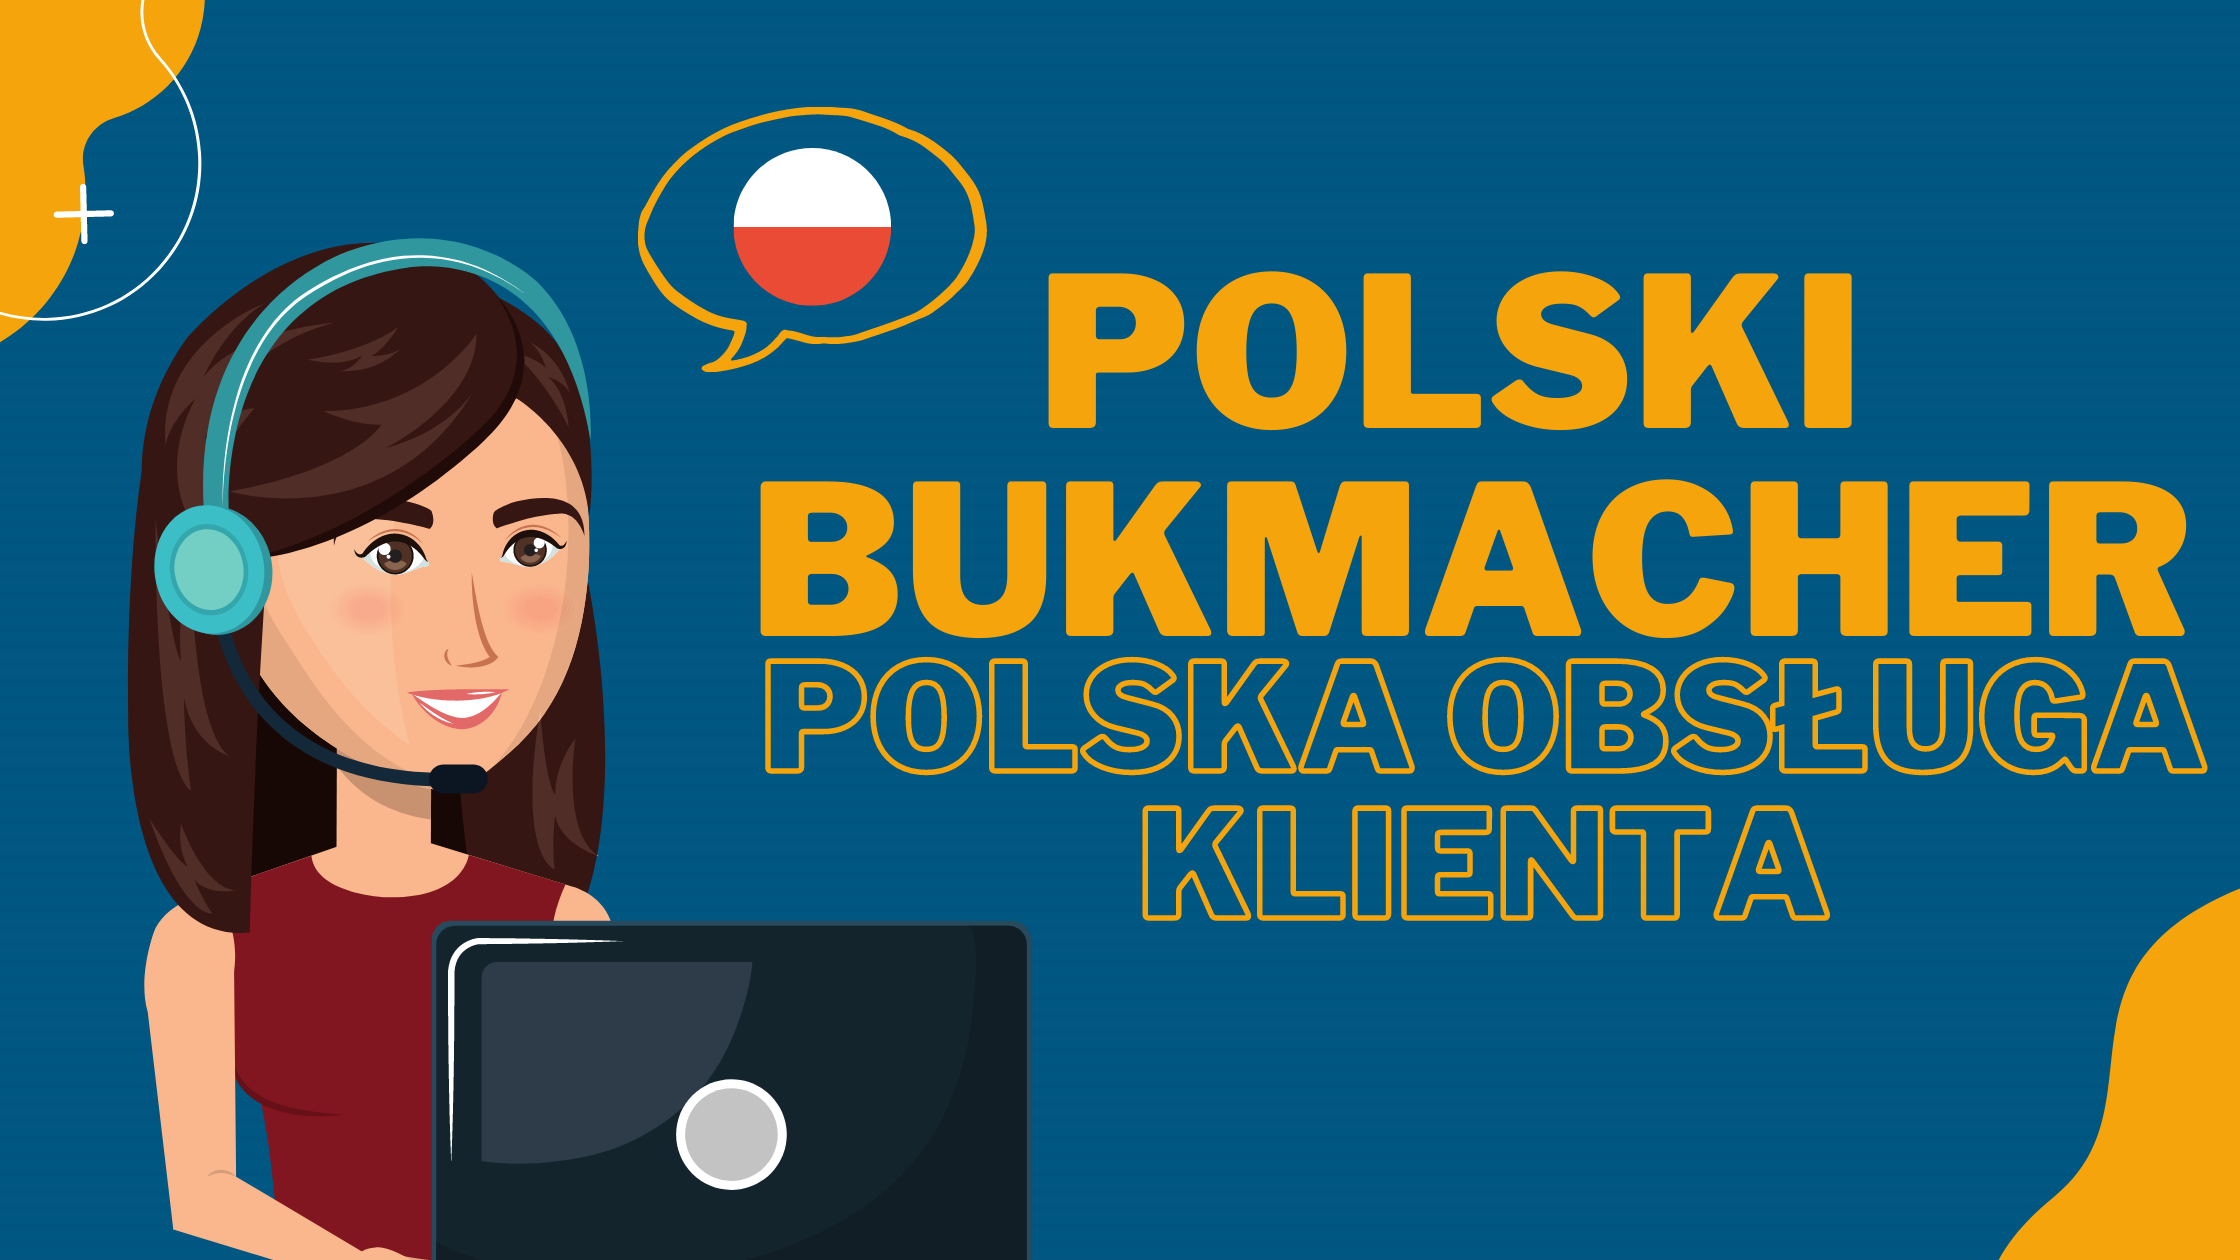 Polska infolinia i obsługa klienta z polskim bukmacherem